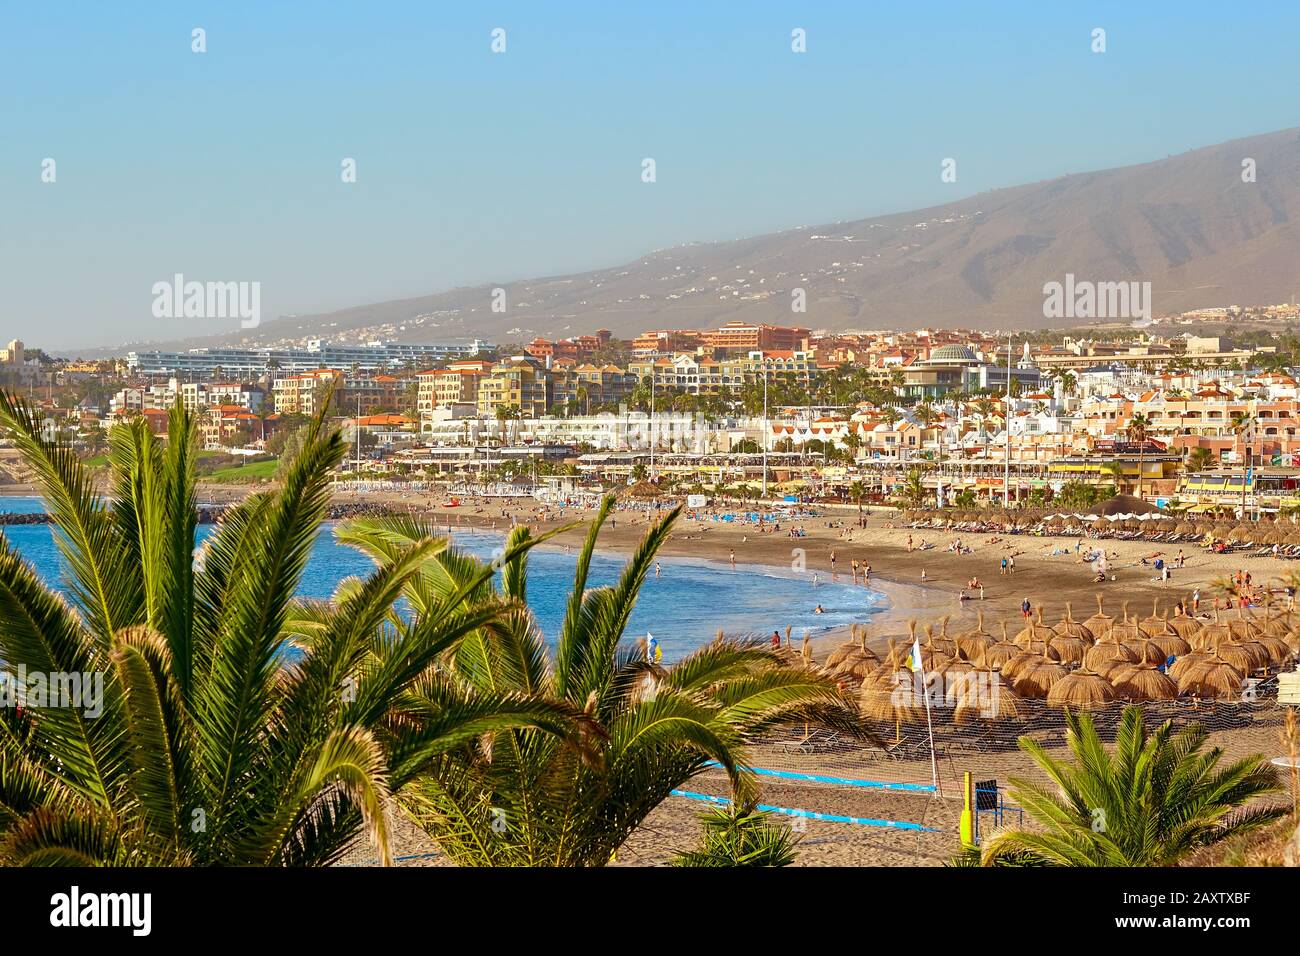 Espagne, Tenerife, Adeje - 17 décembre 2018 : paysage de l'île de Tenerife au coucher du soleil d'été. Station balnéaire. Tourisme et voyage, vacances. Banque D'Images